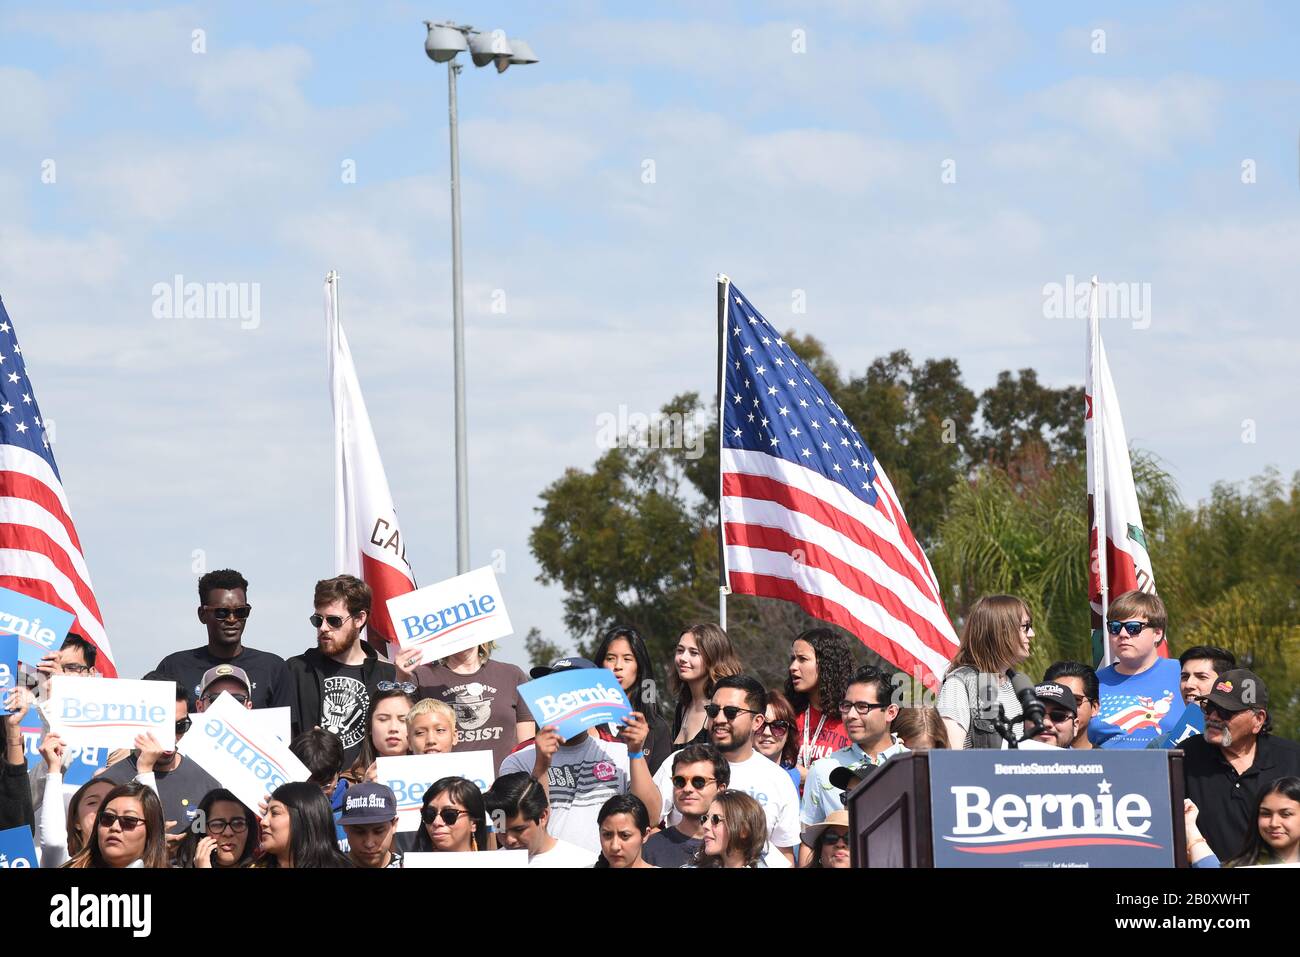 Santa ANA, CALIFORNIE - 21 FÉVRIER 2020: Bernie Sanders Rally. Les partisans sur la scène attendent l'arrivée du candidat à la présidence. Banque D'Images